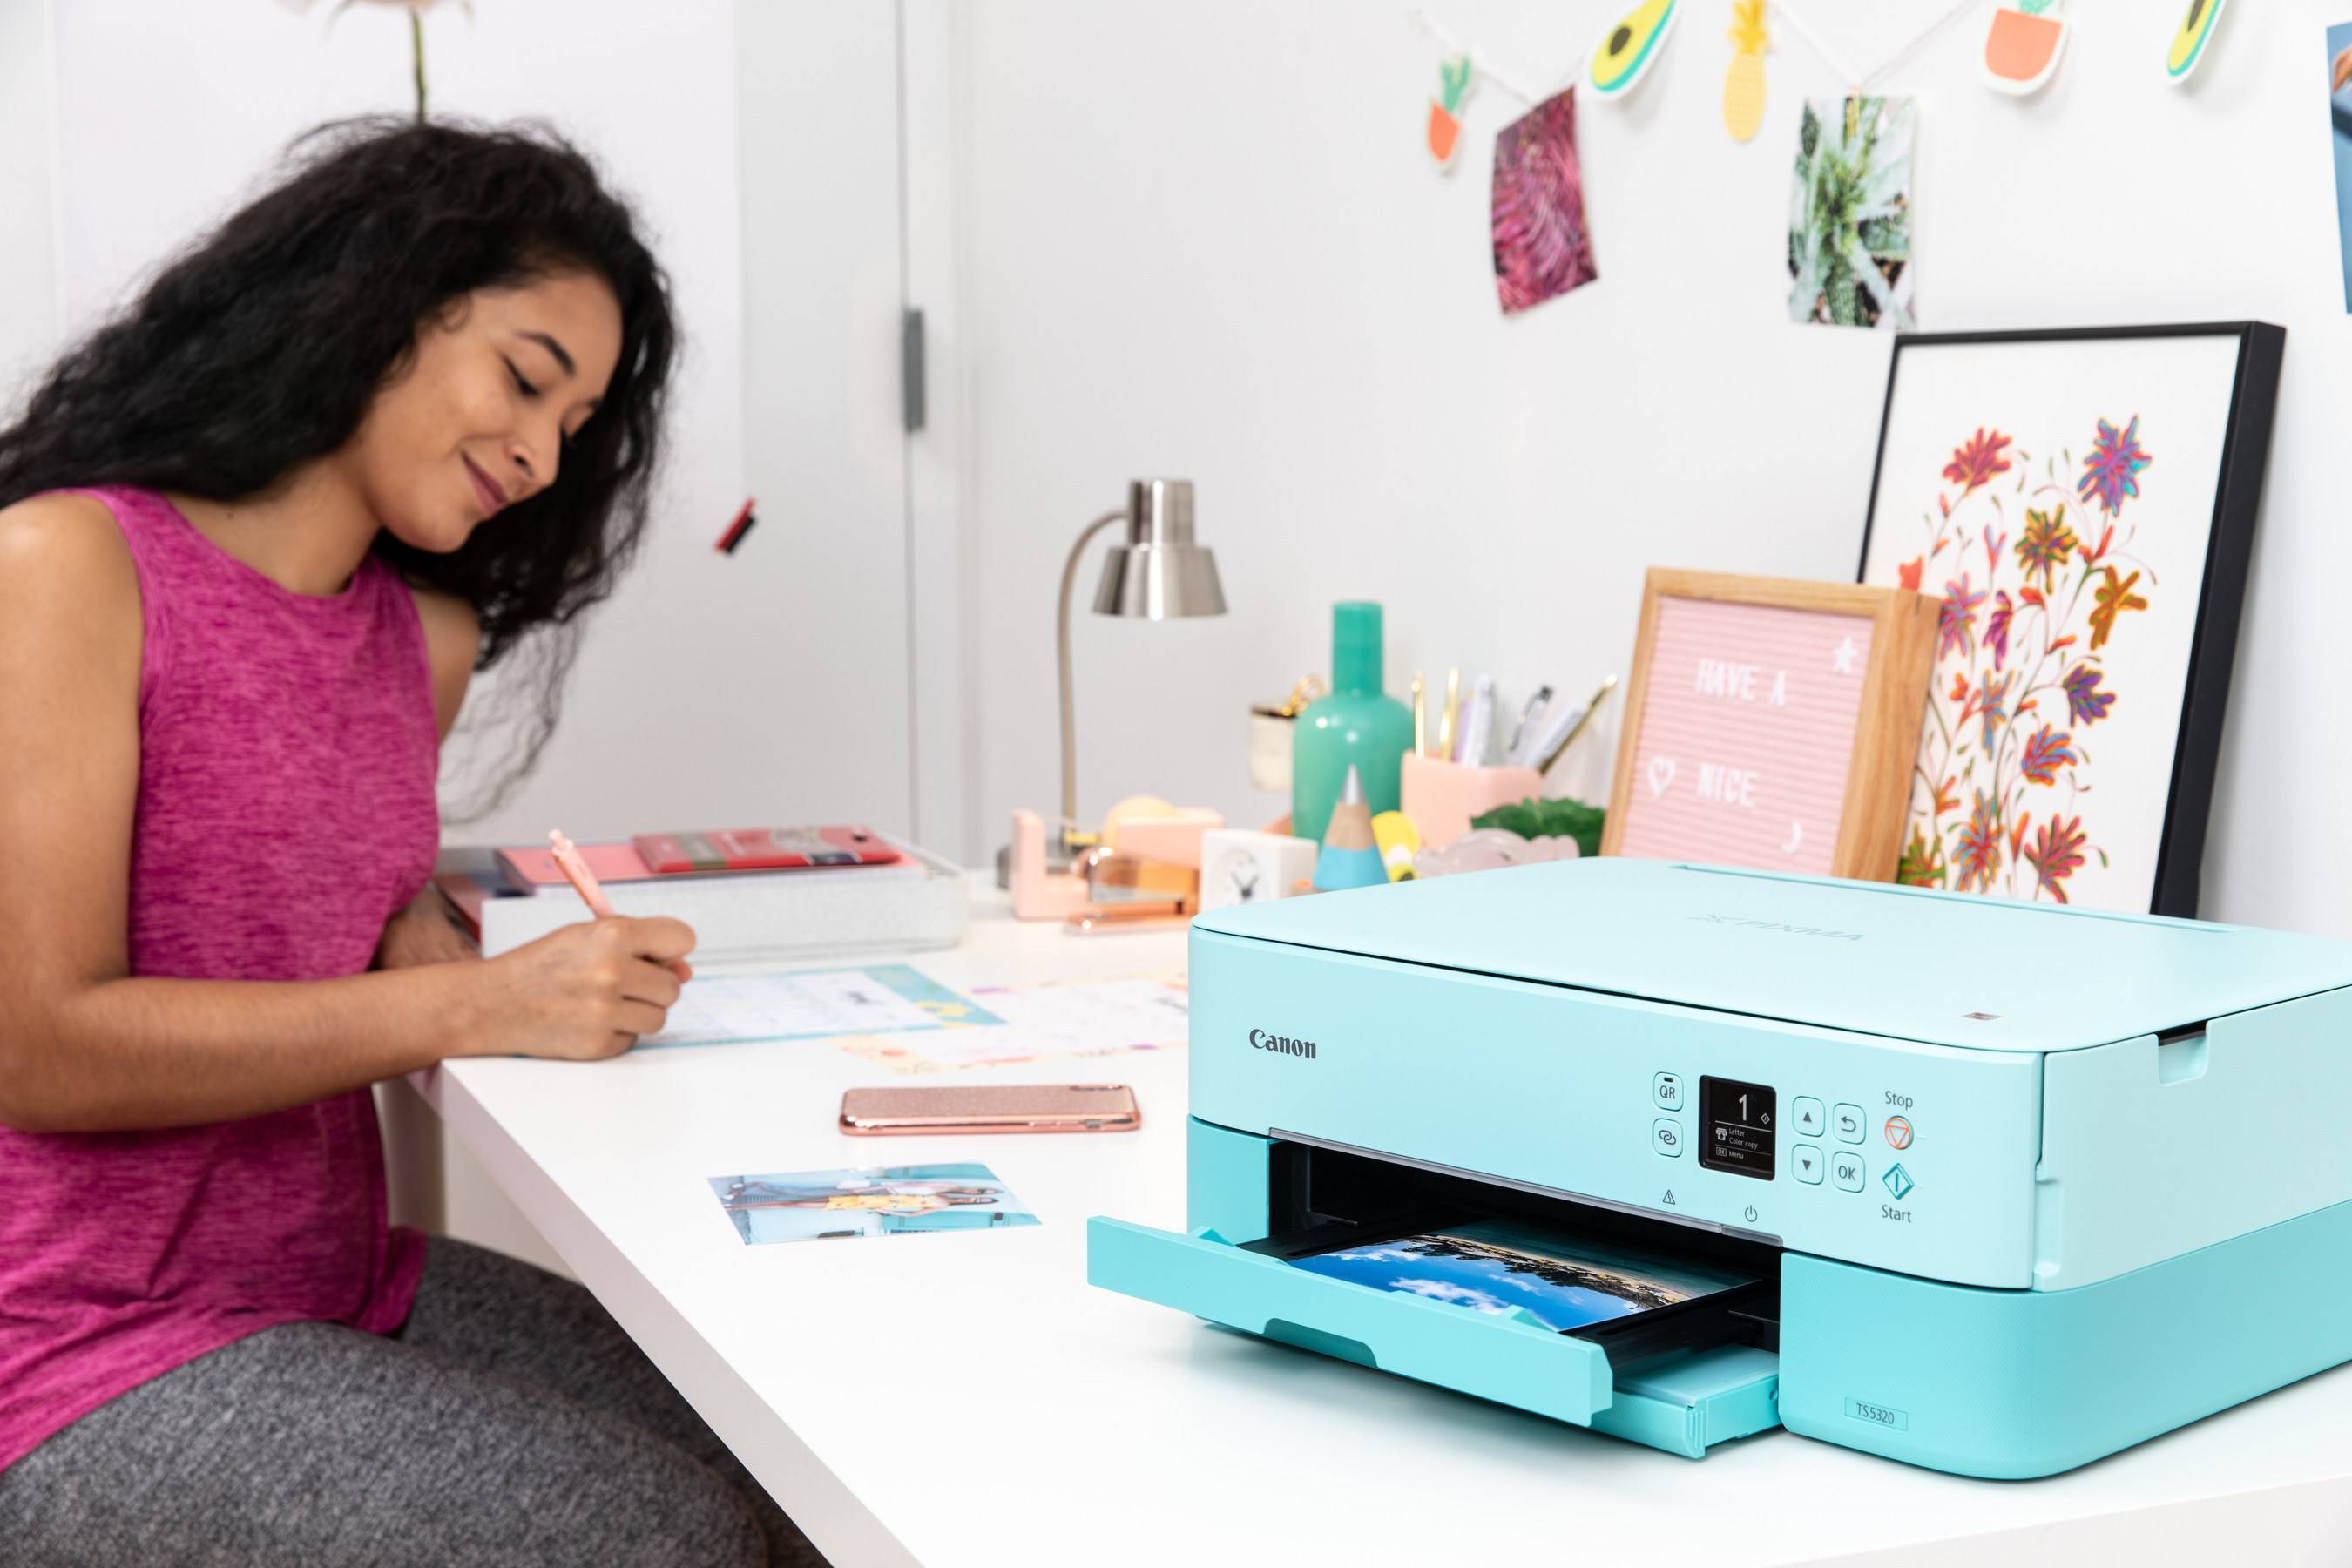 Цветной принтер для офиса: какой лучше выбрать, рейтинг 2020 года